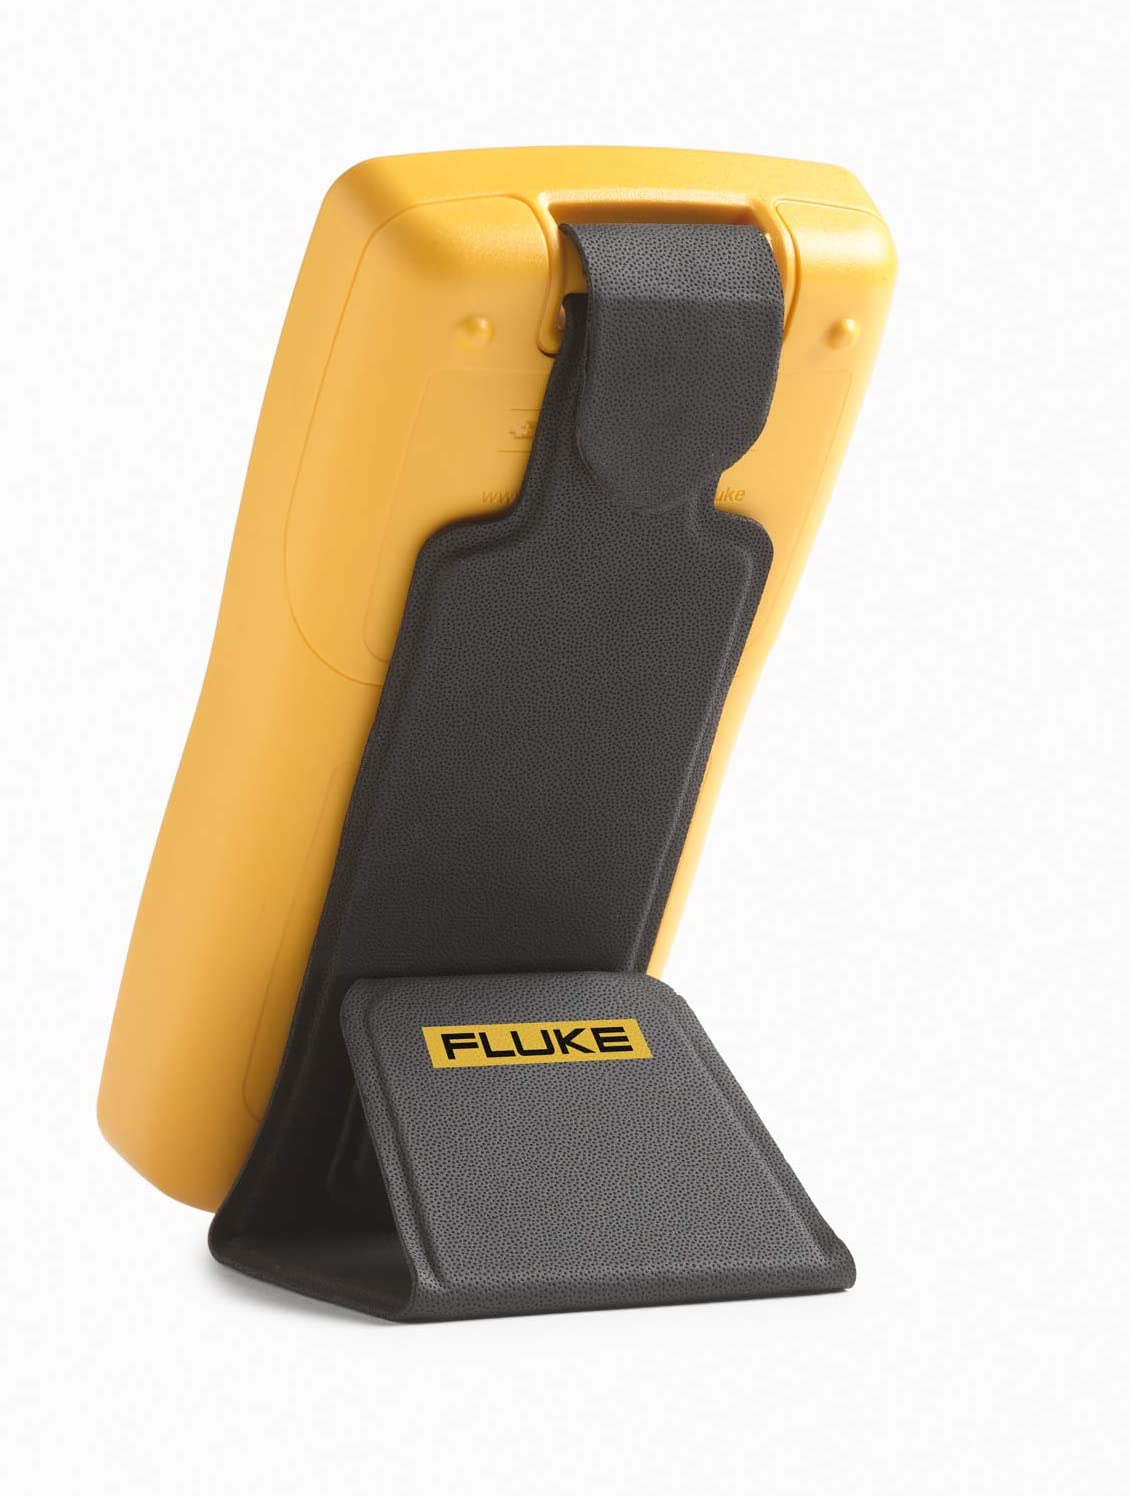 Fluke 107 Palm Sized Digital Multimeter - MPR Tools & Equipment